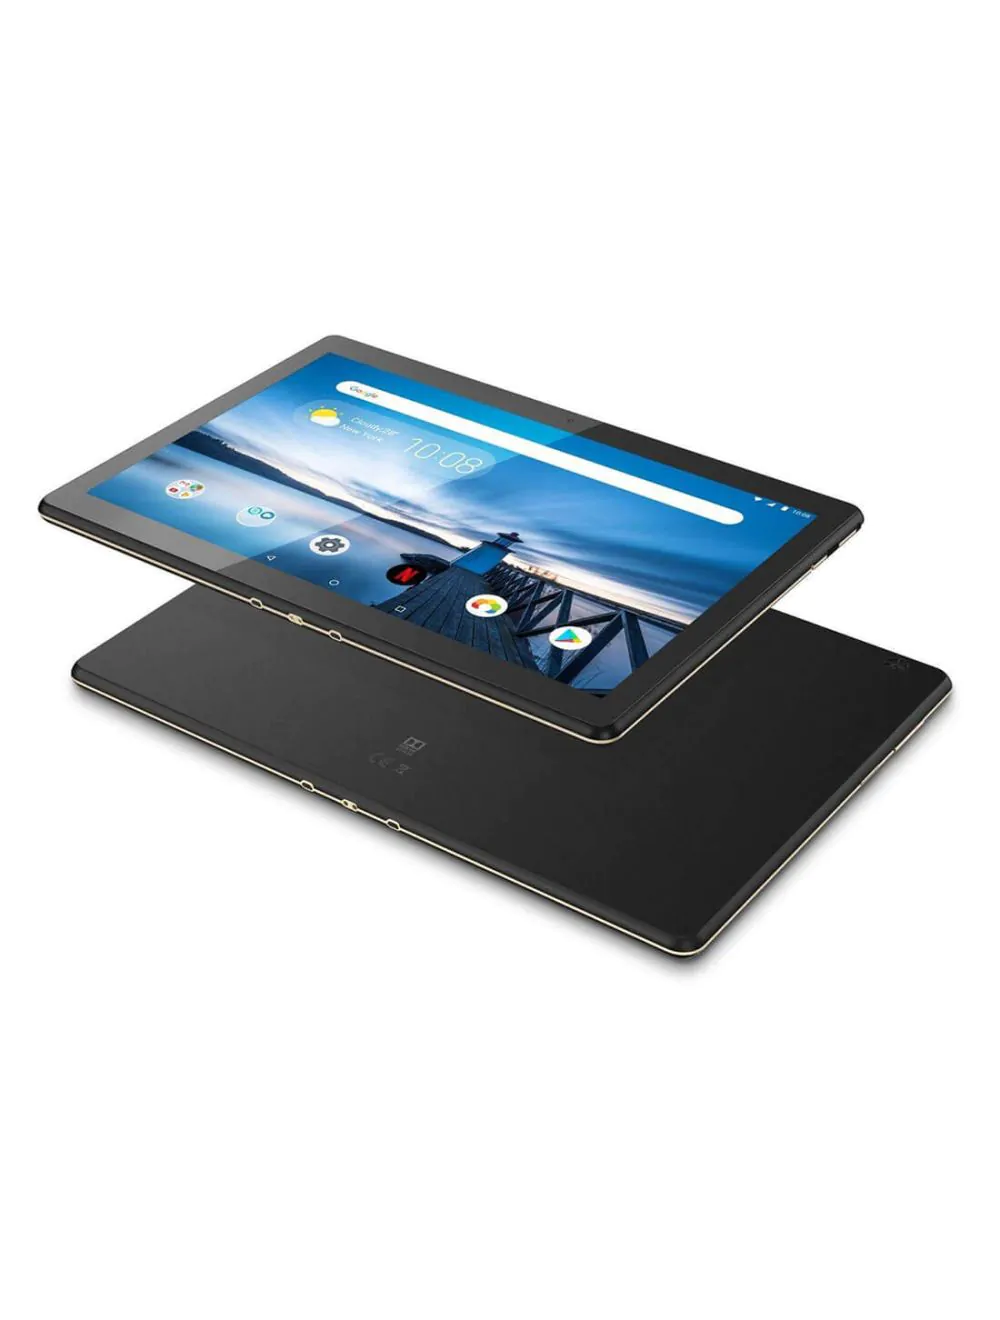 Lenovo M10 HD 25.65 cm (10.1 inch) Wi-Fi + Cellular Tablet 2 GB ...